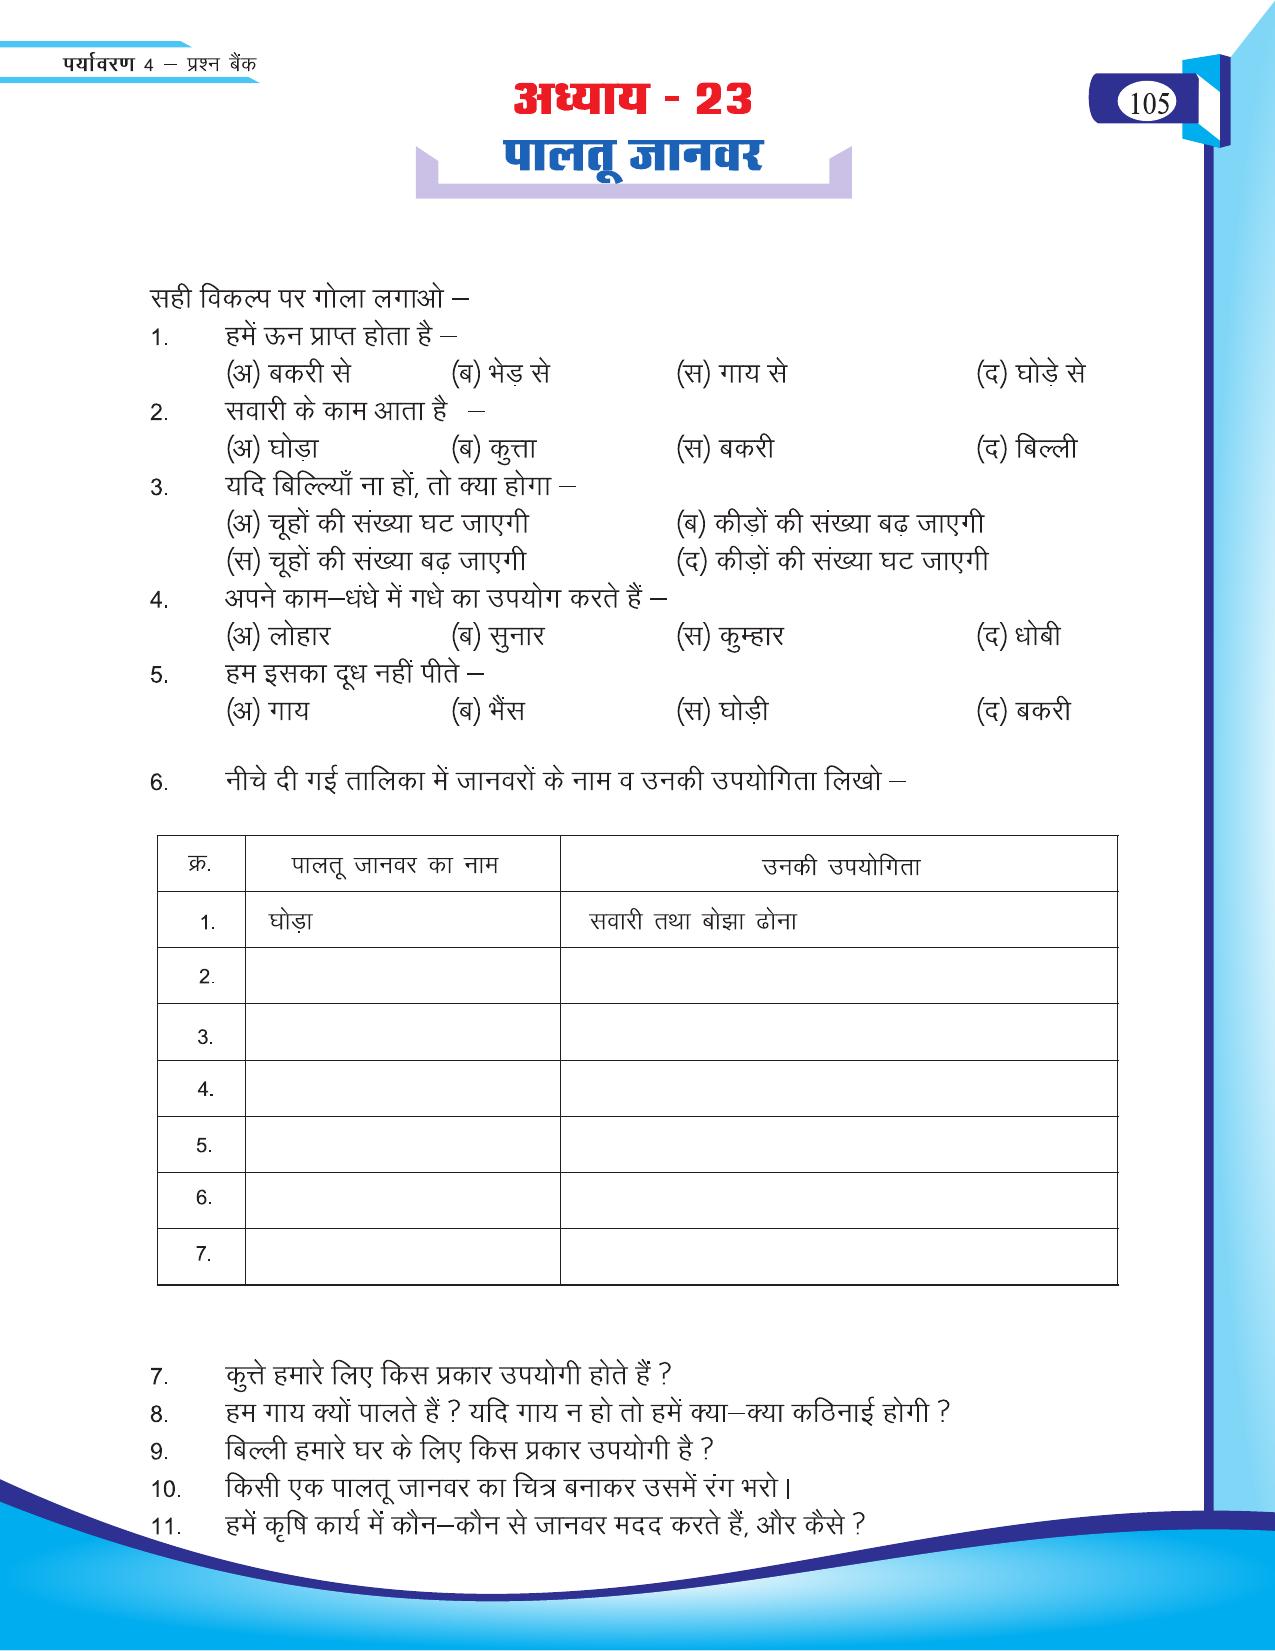 Chhattisgarh Board Class 4 EVS Question Bank 2015-16 - Page 34